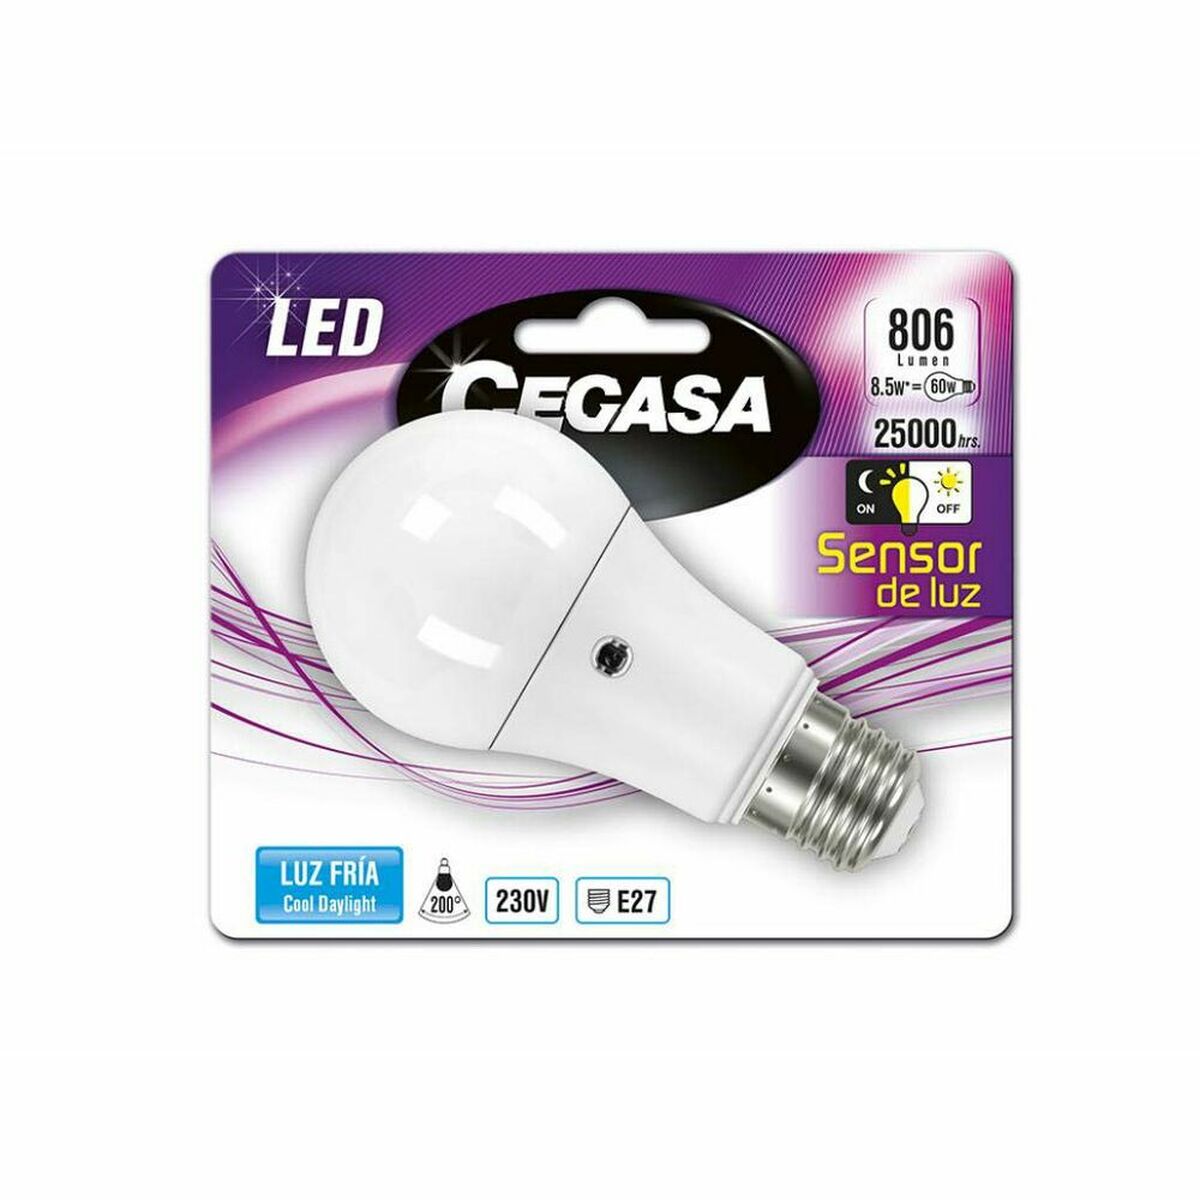 Bec LED Cegasa 8,5 W 5000 K